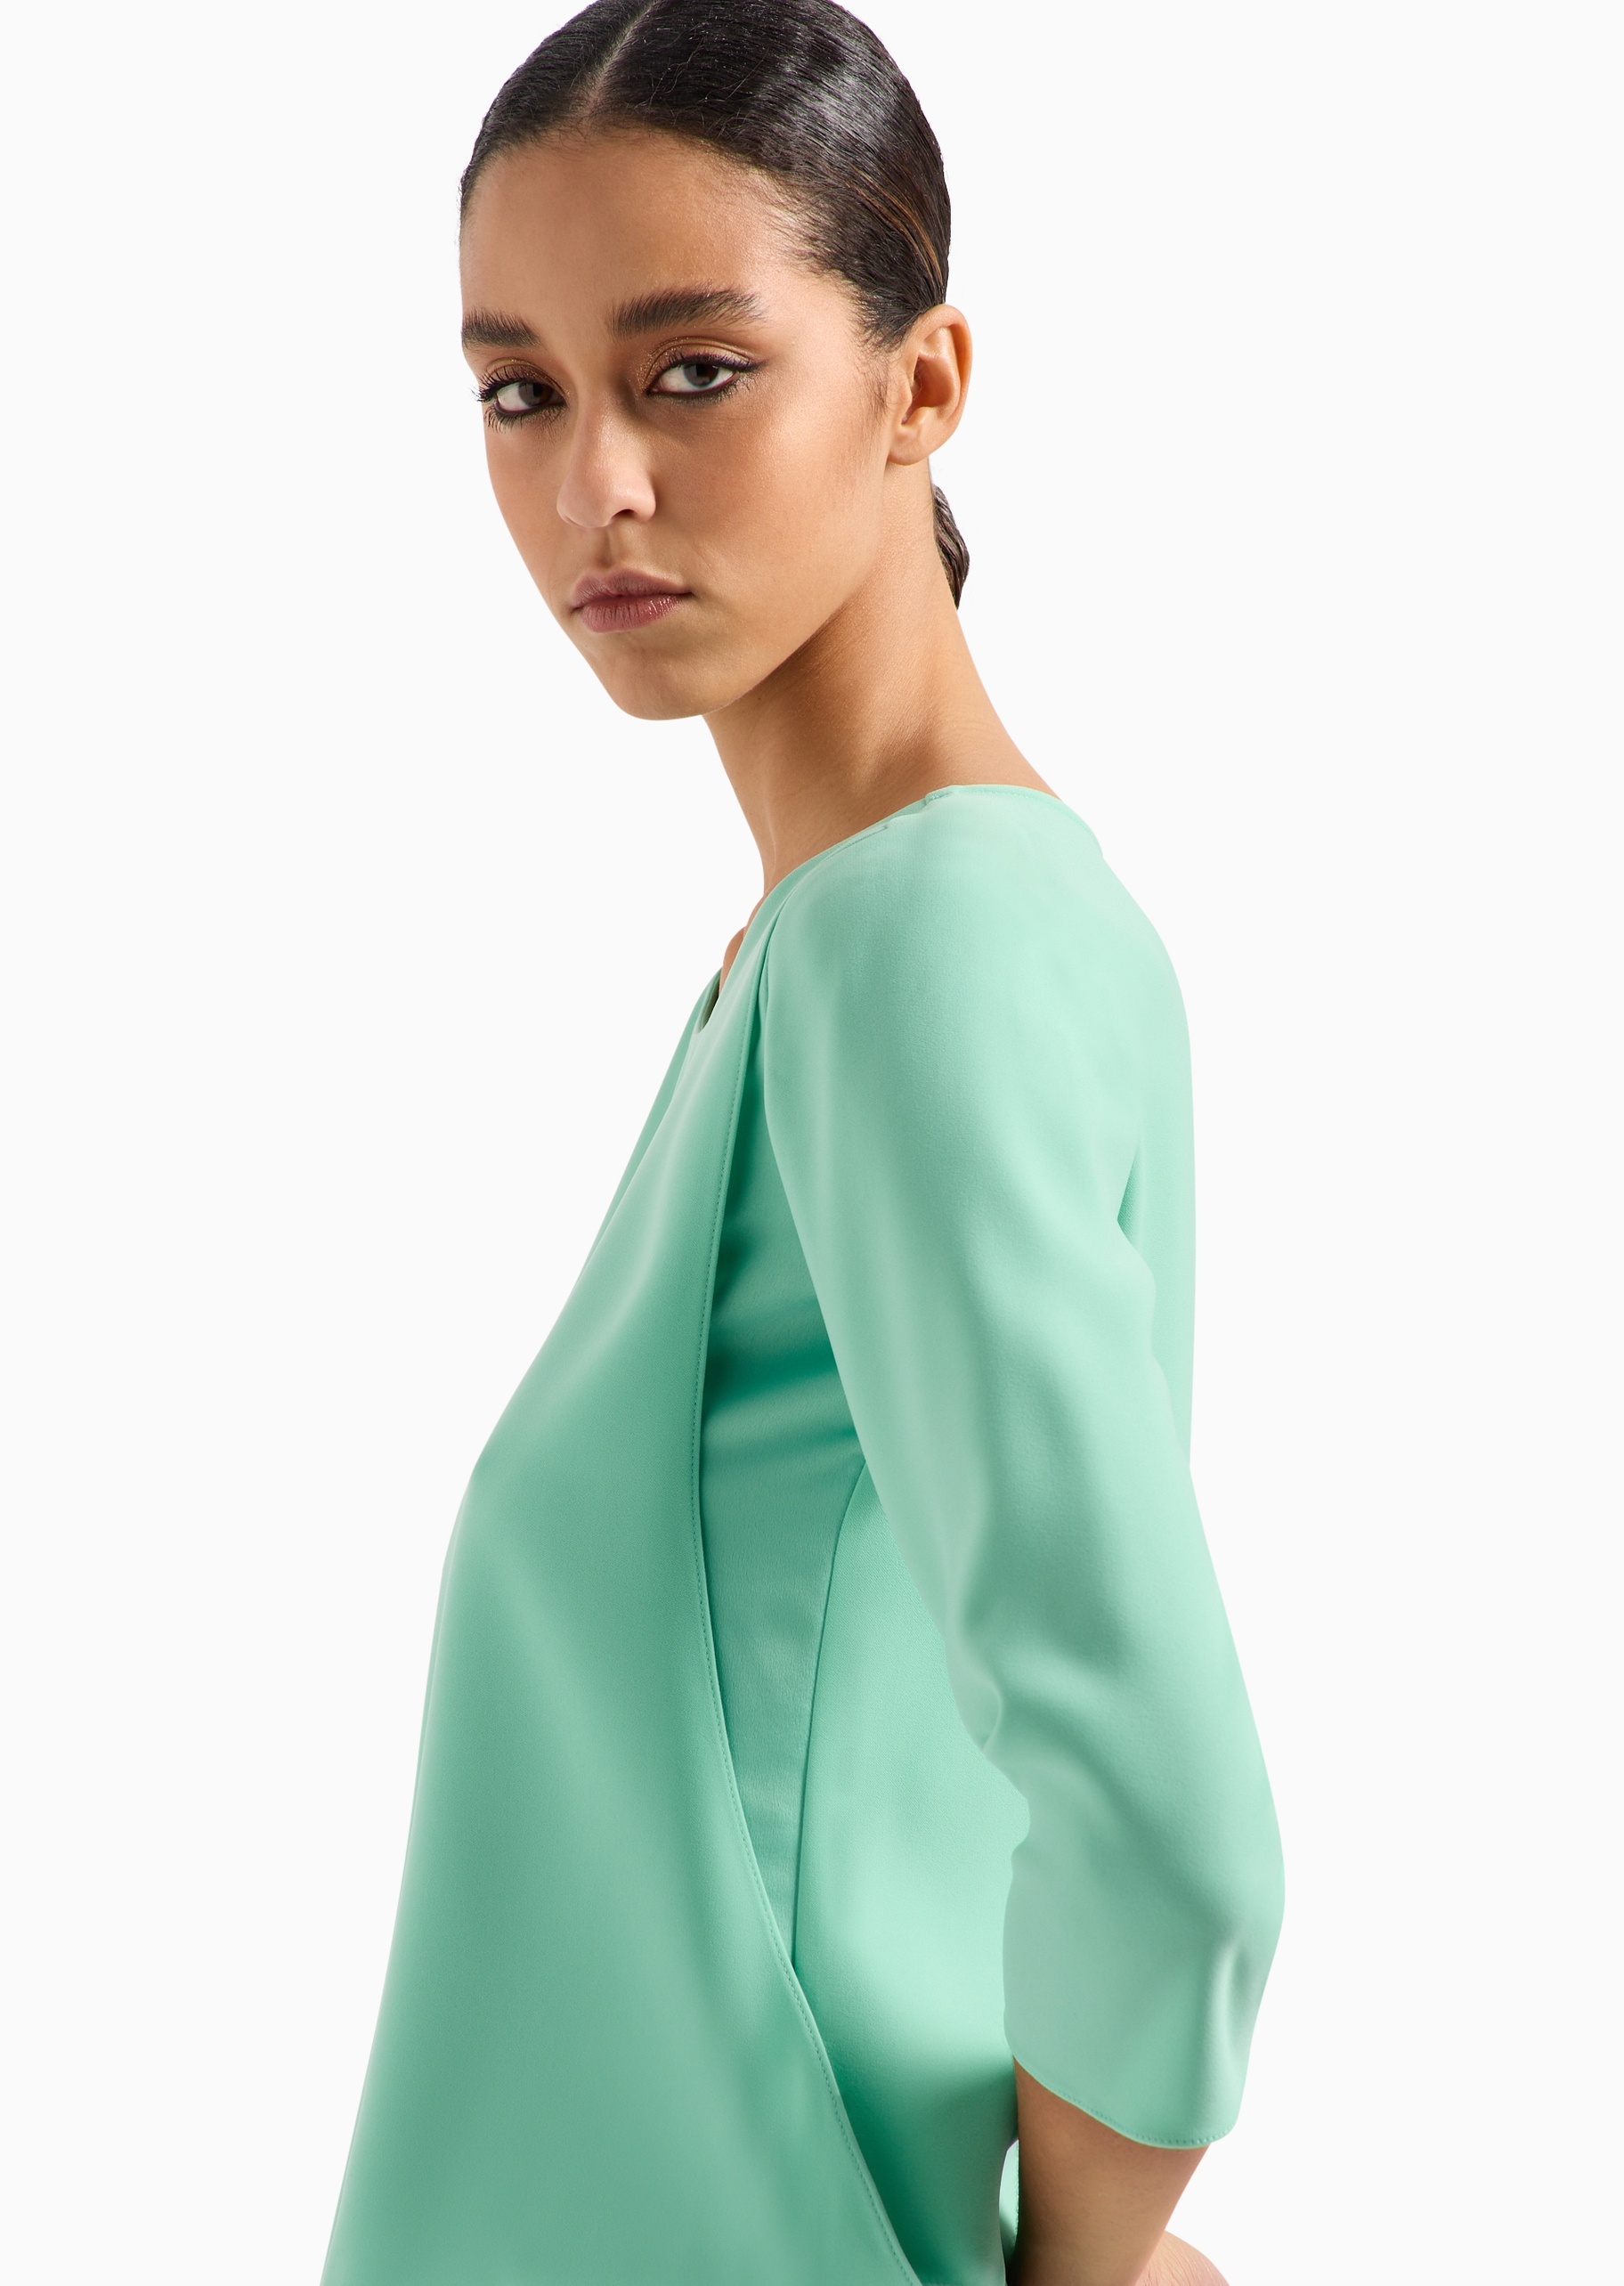 Emporio Armani 女士合身中长袖短款圆领套头纯色衬衫